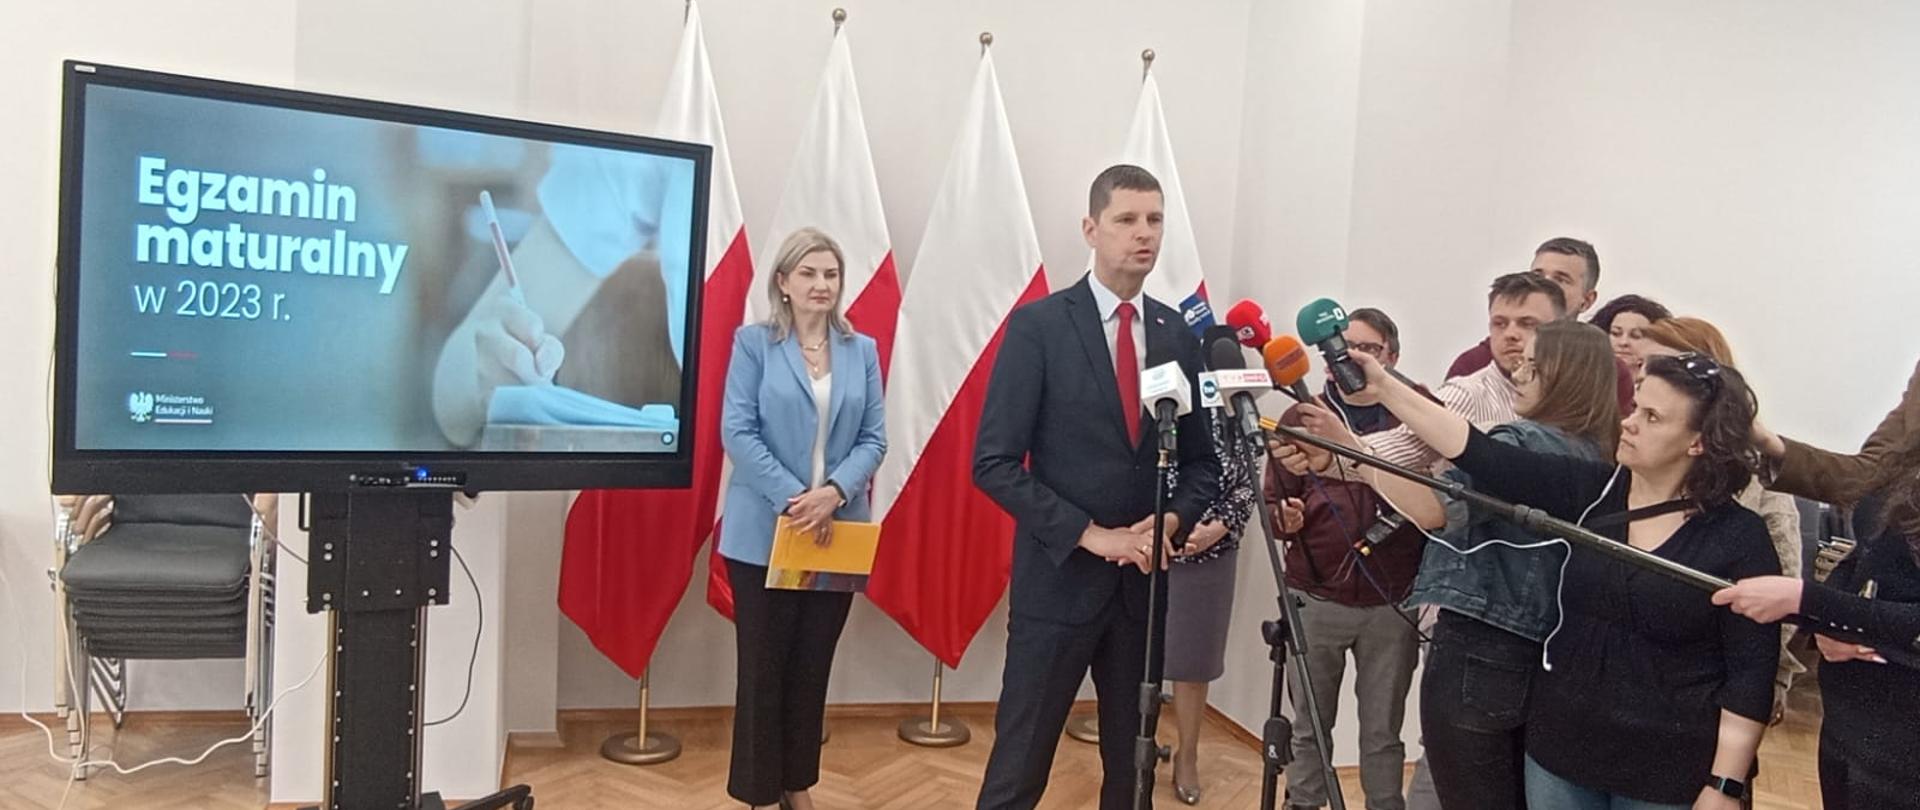 Wiceminister Piontkowski stoi i mówi do mikrofonu na stojaku, przed nim kilkoro dziennikarzy trzymających w rekach mikrofony, za nim monitor z napisem Egzamin maturalny 2023, dalej na tle białej ściany cztery polskie flagi przy których stoi kobieta w jasnoniebieskiej marynarce.